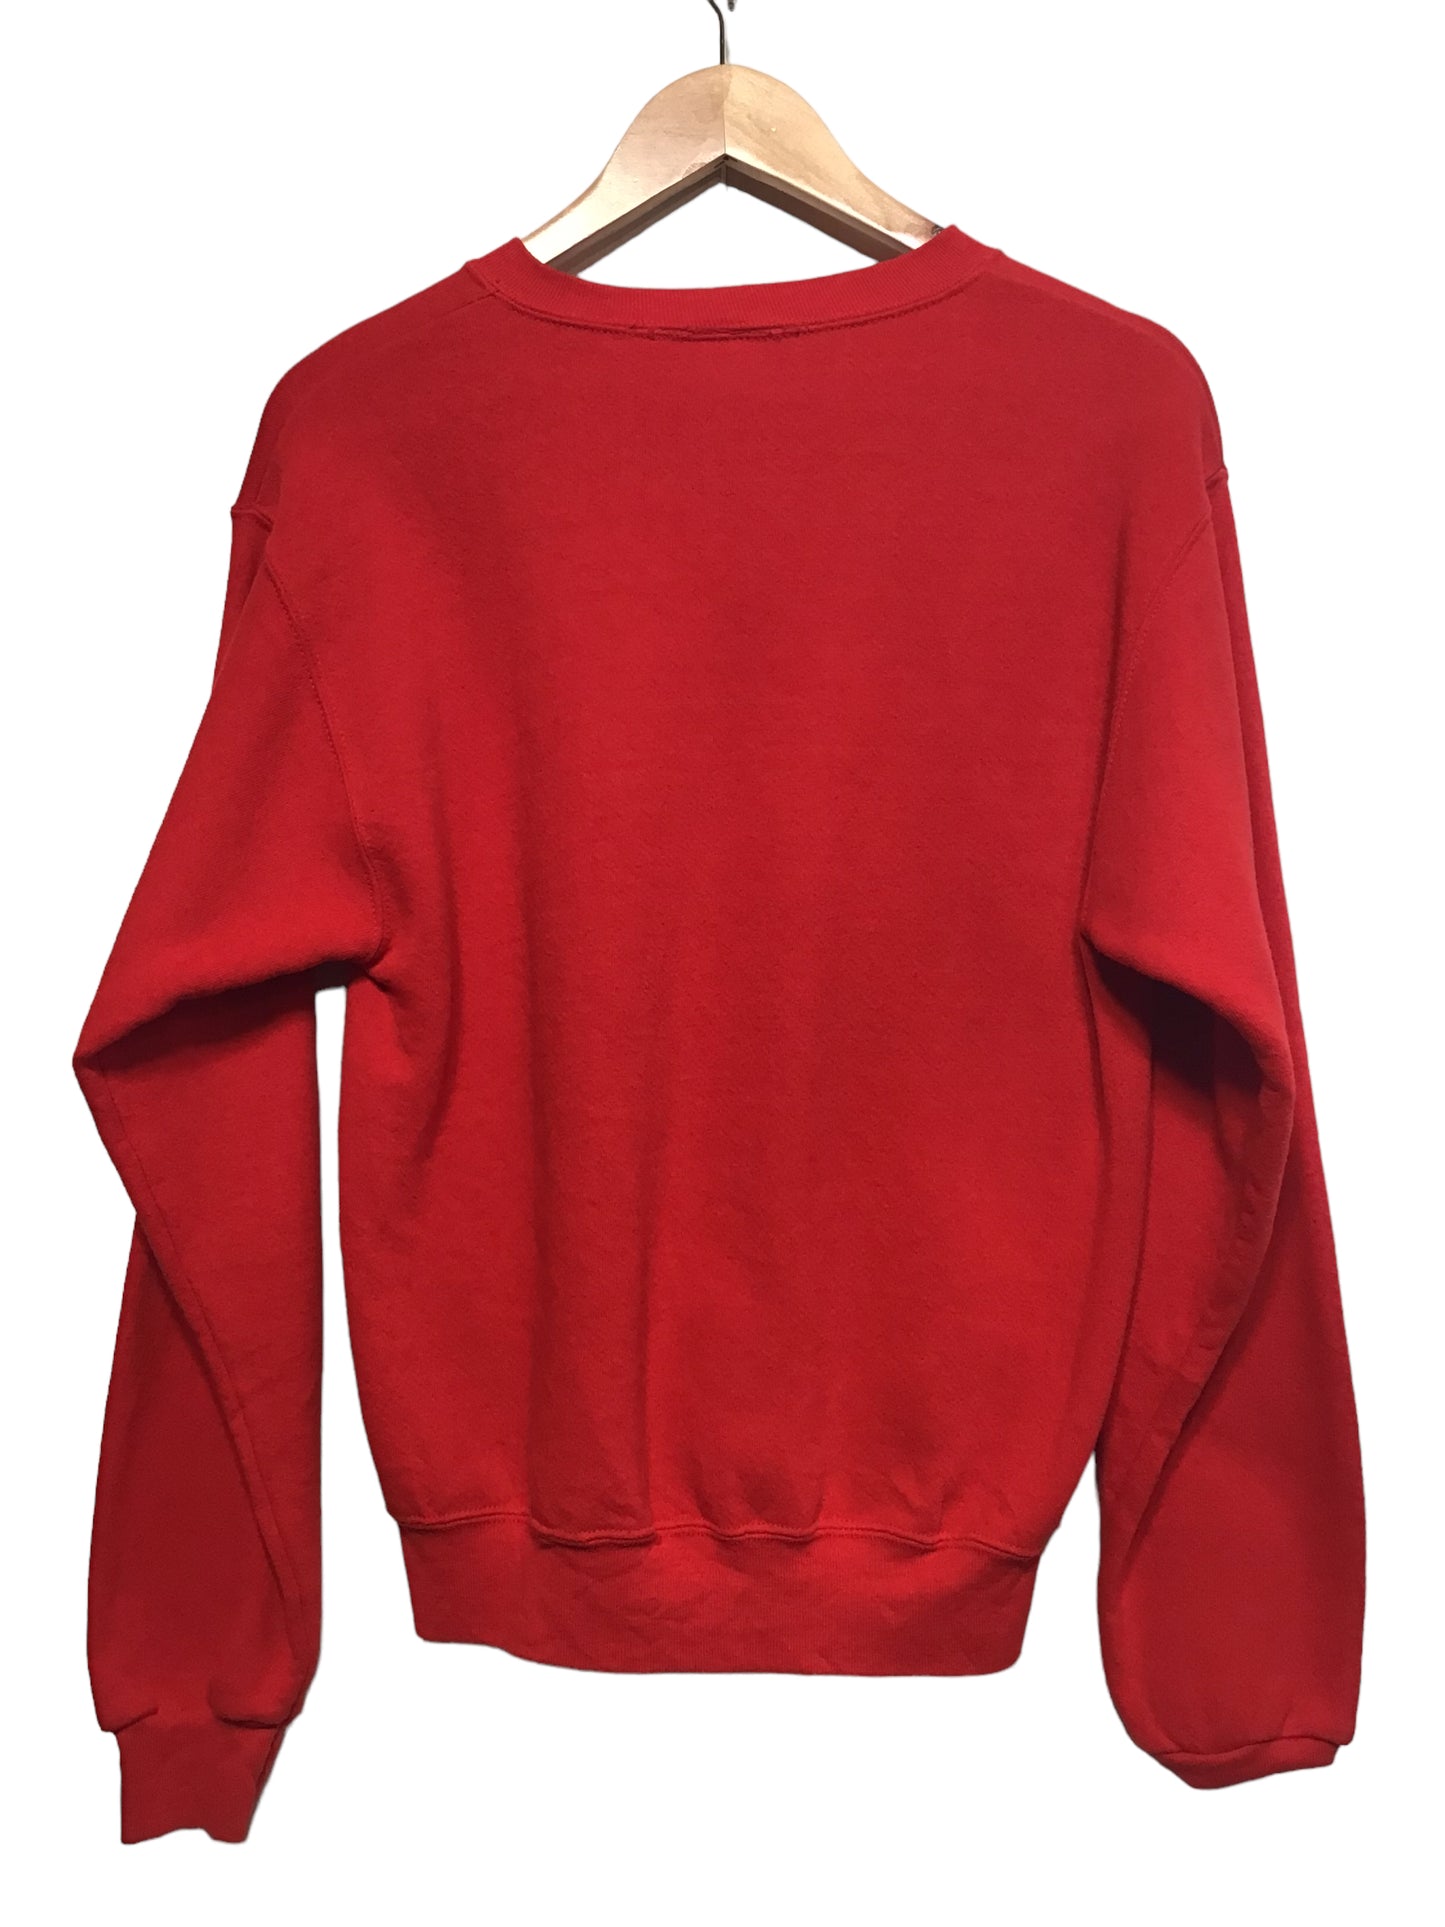 Lee Sport Sweatshirt (Size L)